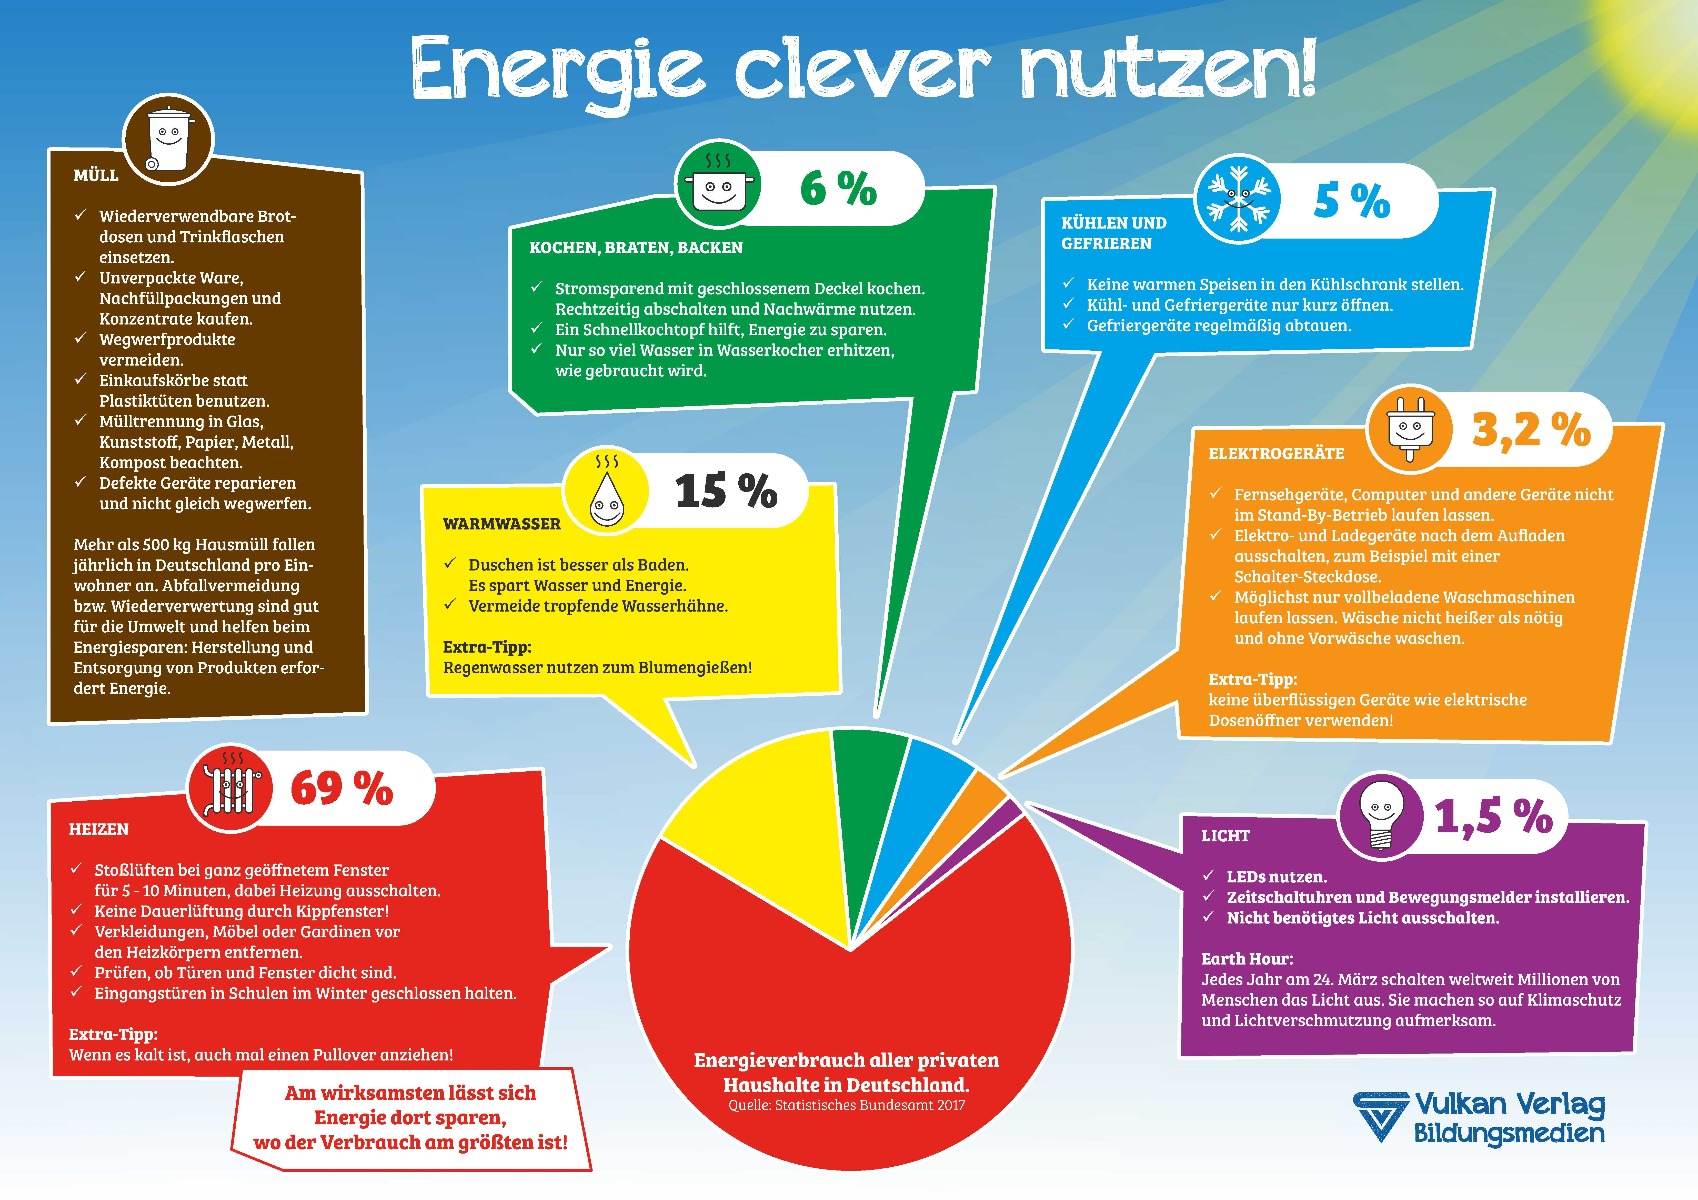 Poster "Energie clever nutzen!"